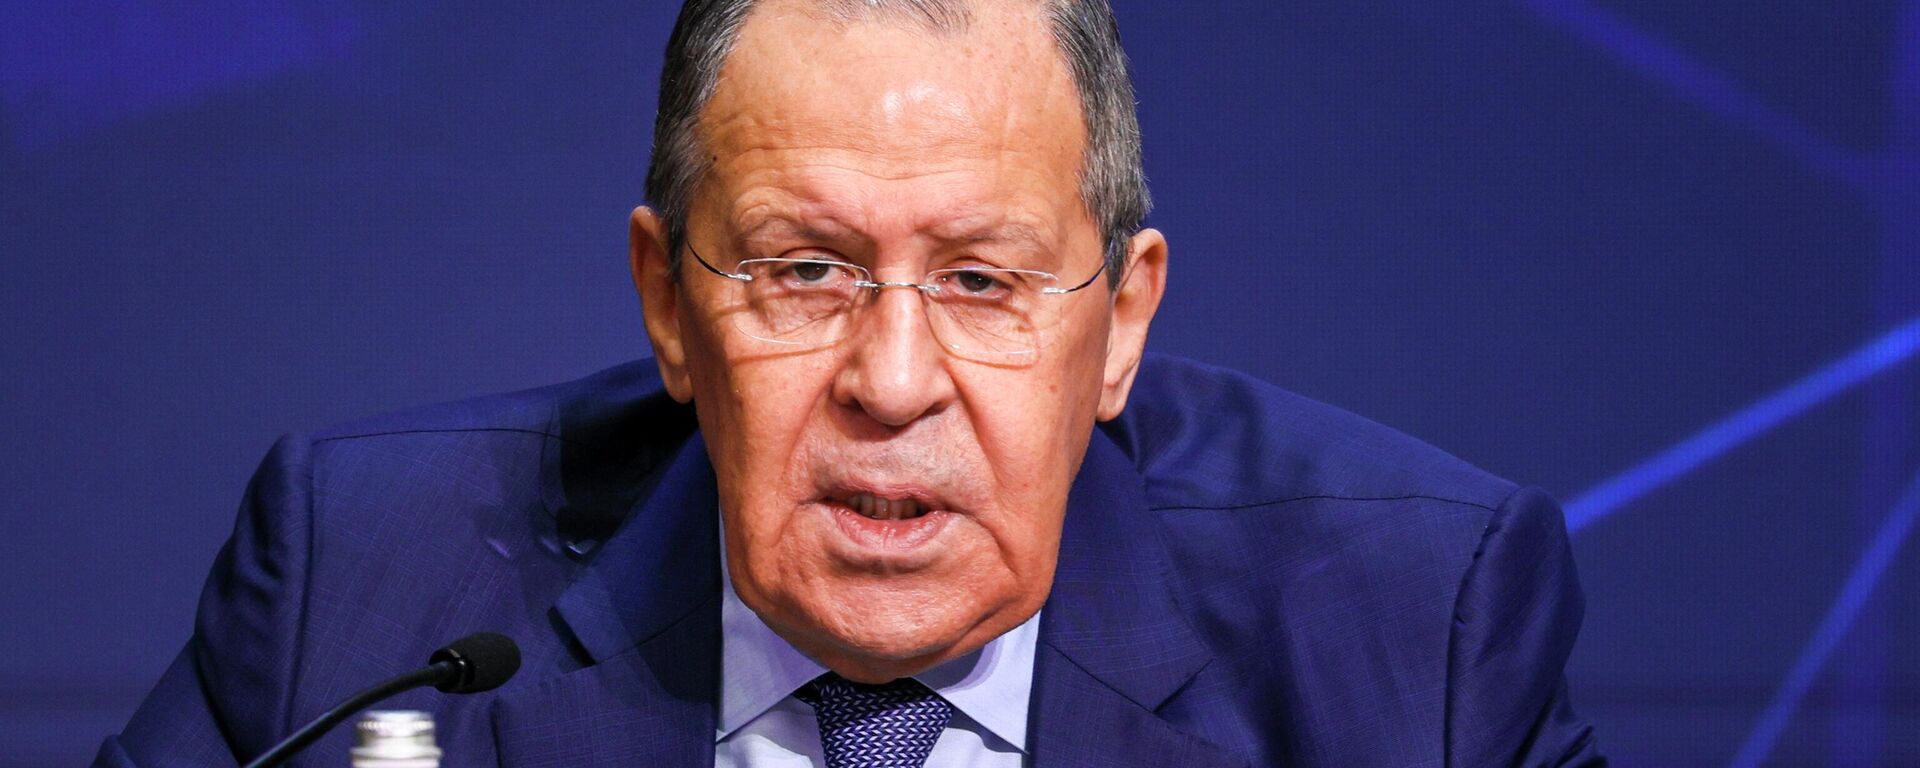 Ministro das Relações Exteriores da Rússia, Sergei Lavrov, participa de conferência sobre relações internacionais, em Moscou, na Rússia, em 14 de abril de 2022 - Sputnik Brasil, 1920, 19.06.2022